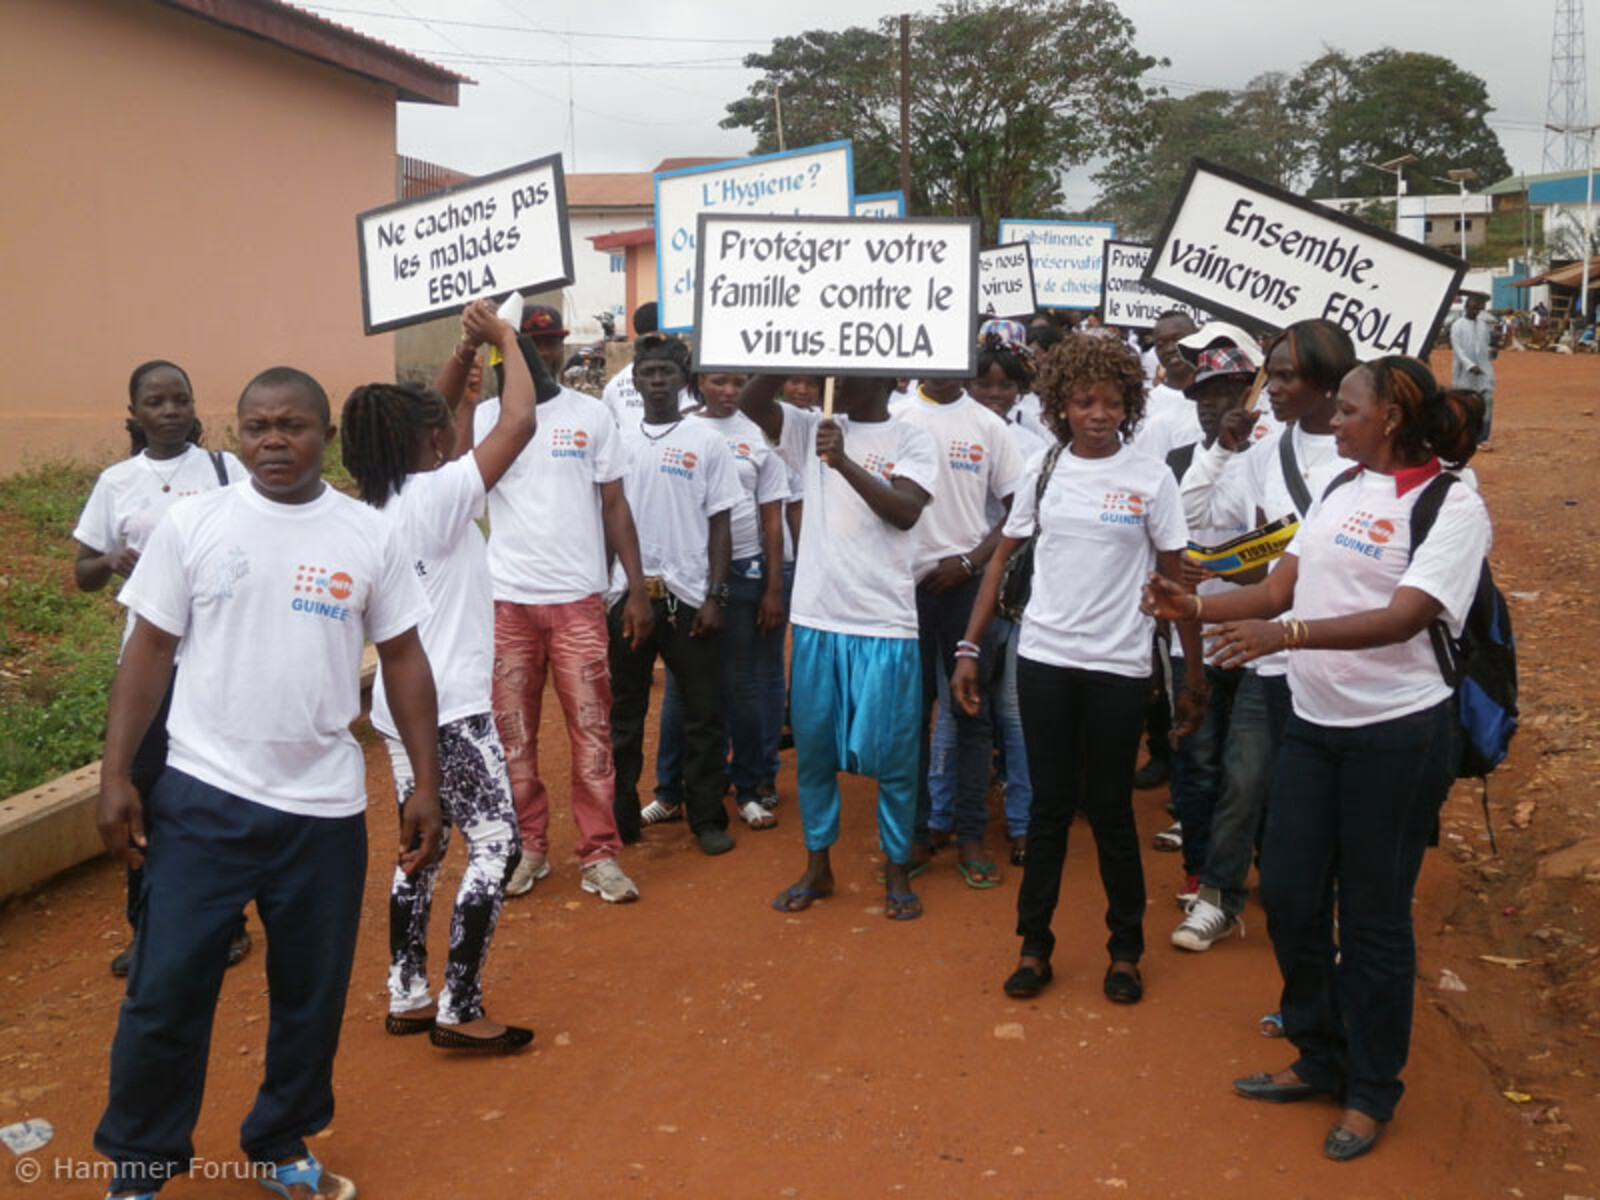 Öffentliche Aufklärungsmaßnahmen sollen die Menschen auf die Gefahren von Ebola hinweisen